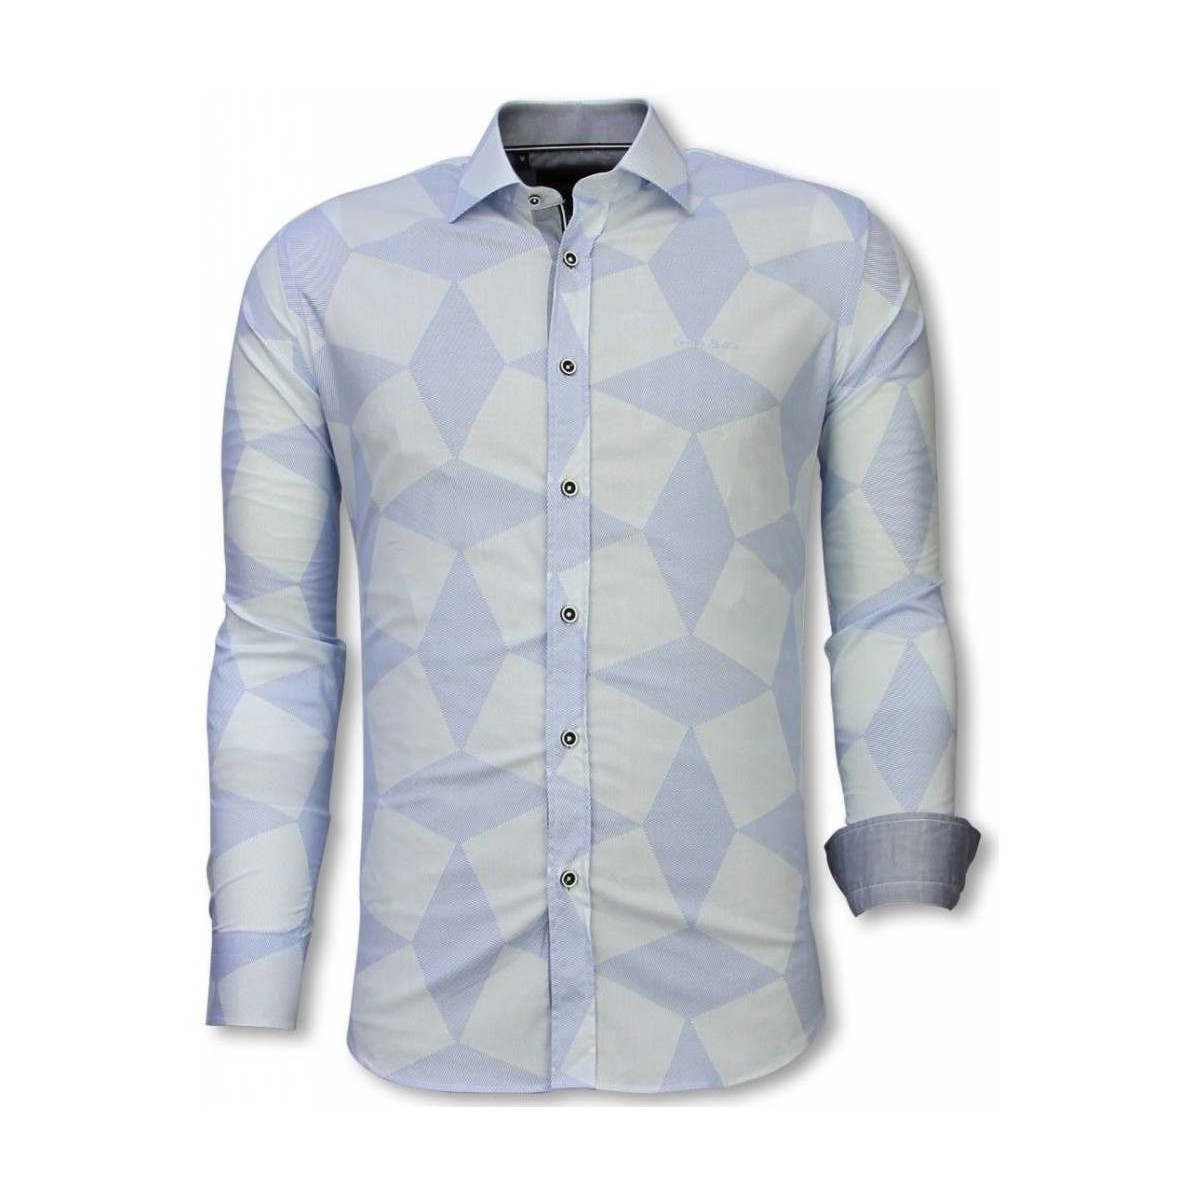 tekstylia Męskie Koszule z długim rękawem Tony Backer 68681927 Niebieski